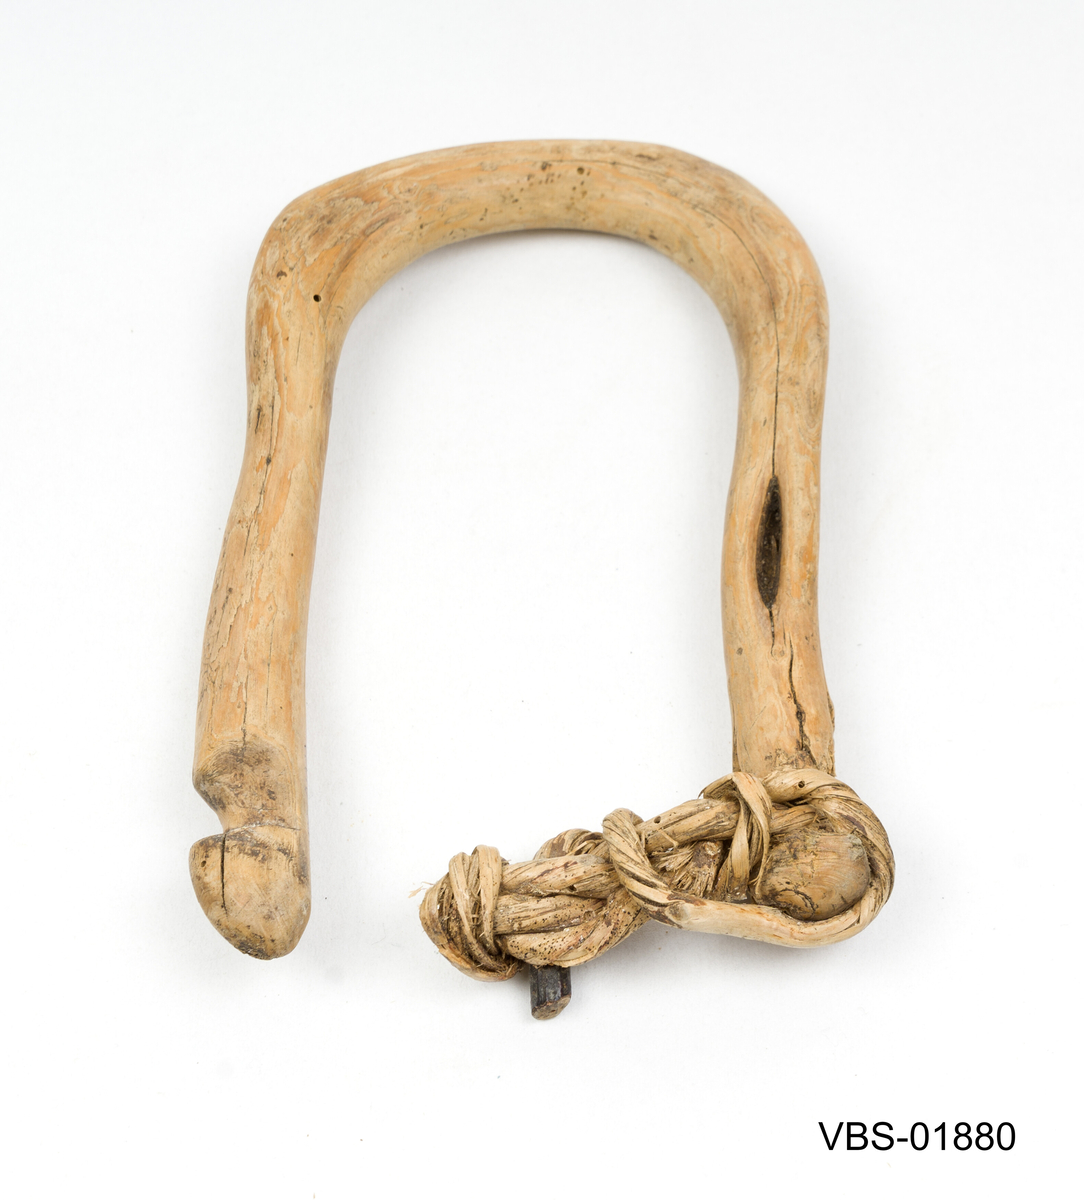 Laget av en hel einergrein, brettet i hesteskoform.
Rester av tau i knutet vegetabilsk fiber på den ene siden.